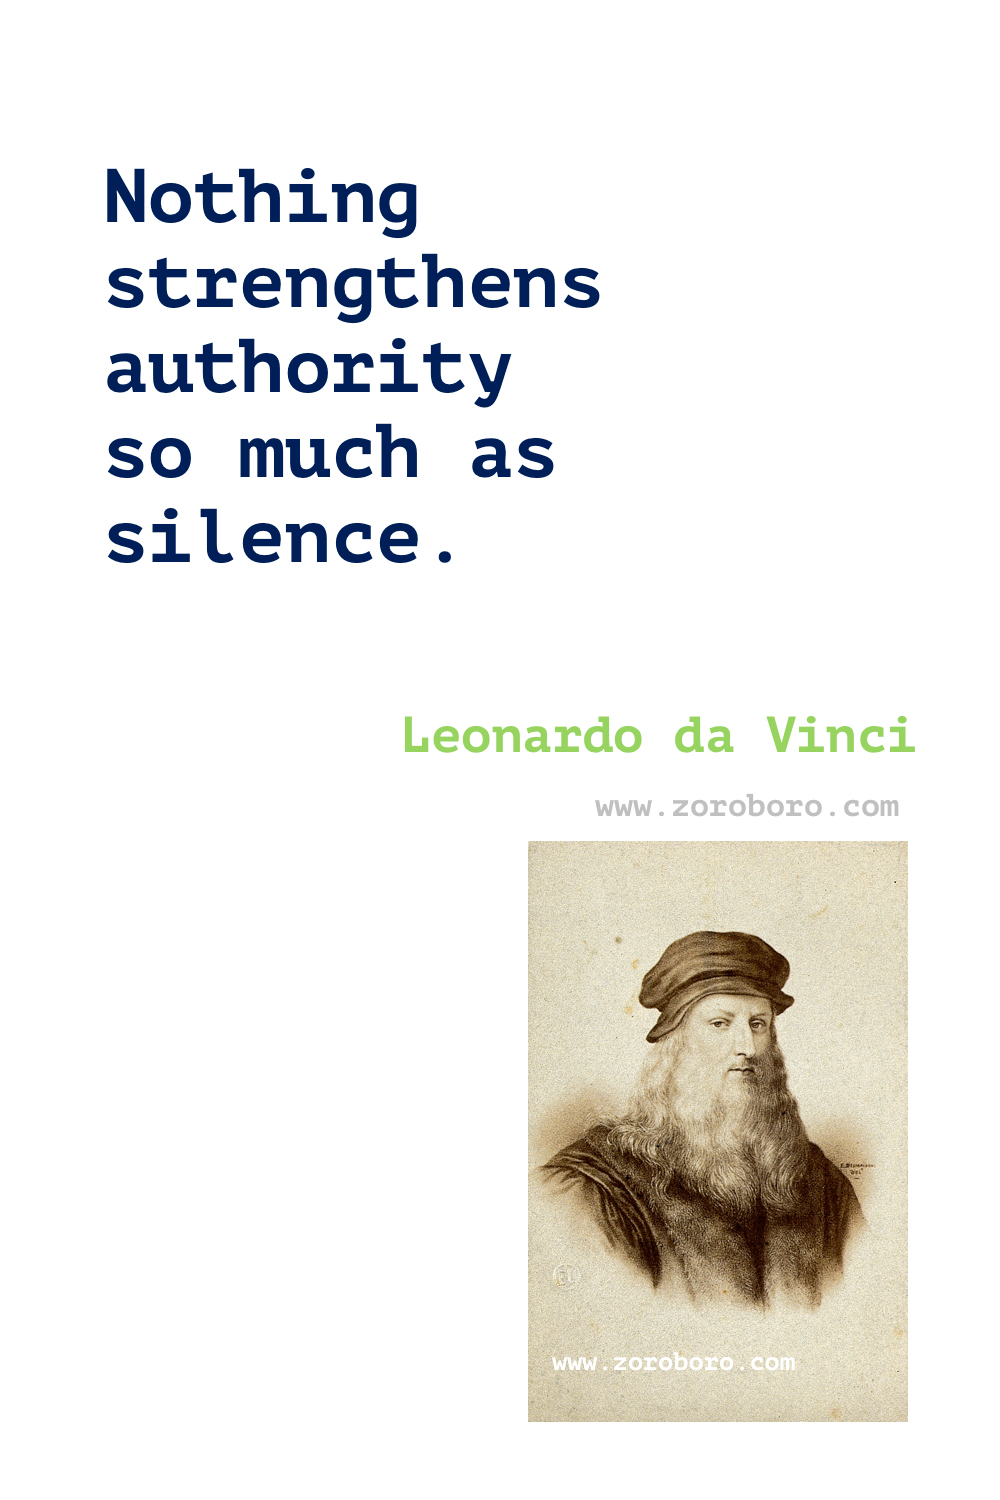 Leonardo da Vinci Quotes, Leonardo da Vinci Art Quotes, Leonardo da Vinci Philosophy, Leonardo da Vinci Diary, Writings & Work Quotes, Leonardo da Vinci Painting Quotes, Leonardo da Vinci Books Quotes.